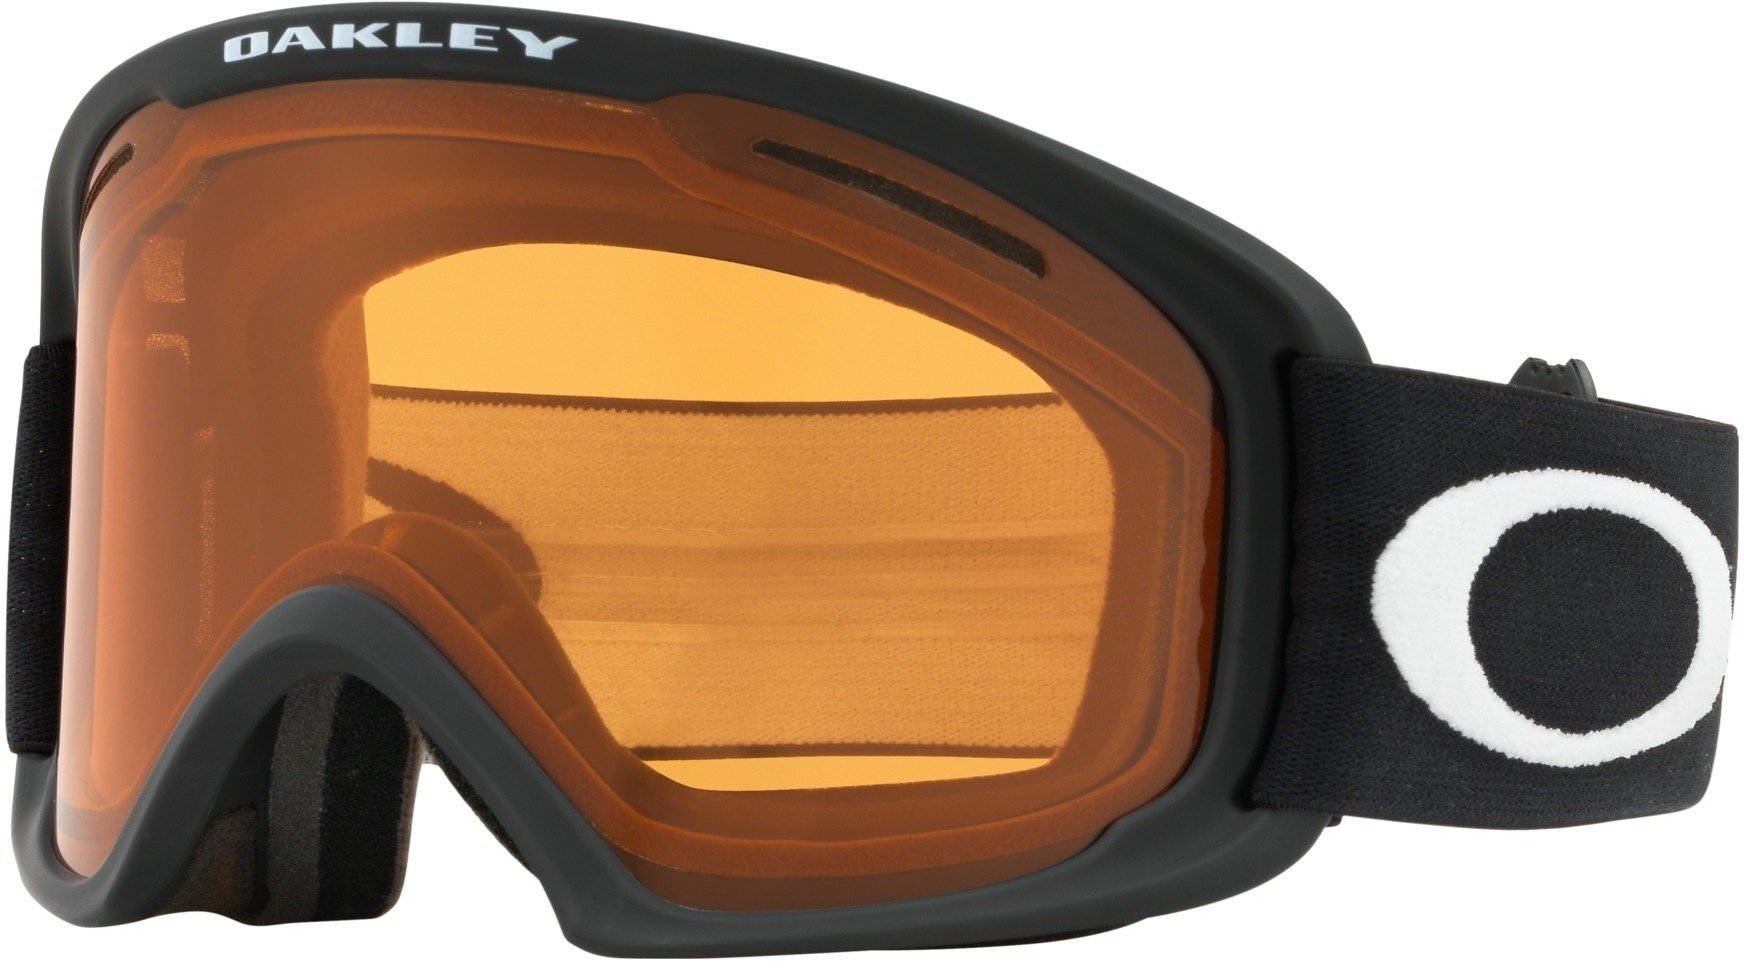 Skijaške naočale Oakley O Frame 2.0 XL Skijaške naočale